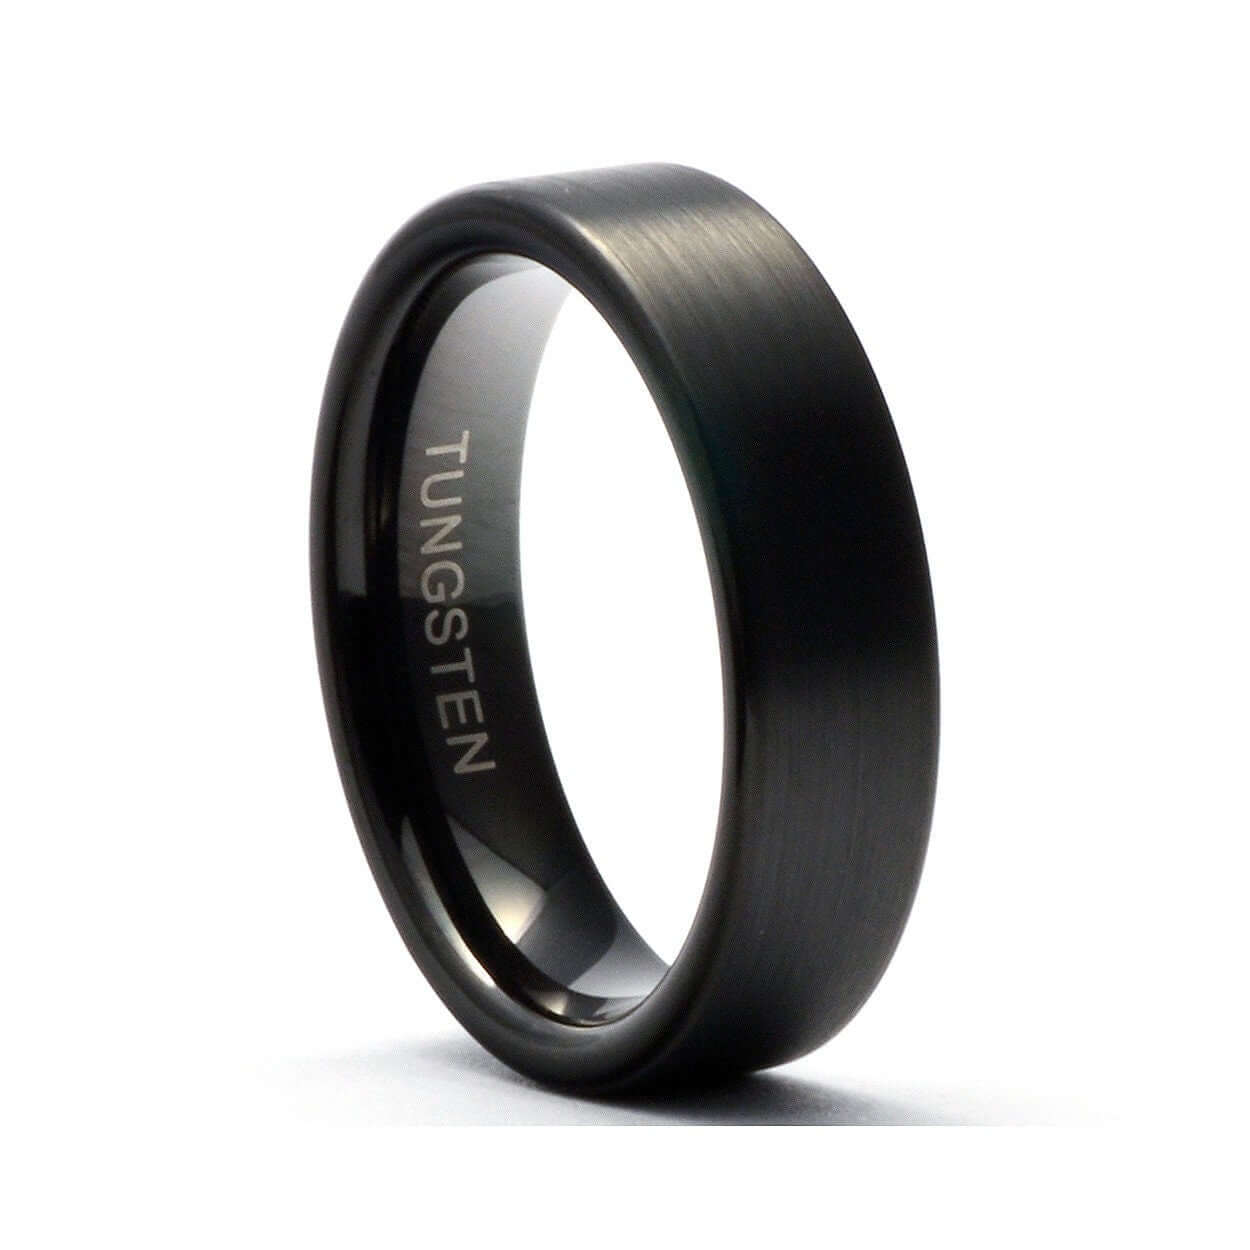 Tungsten Ring - Men's Tungsten Wedding Band - Men's Black Wedding Band - Black Tungsten Ring - Tungsten - Tungsten Band - Personalized Ring